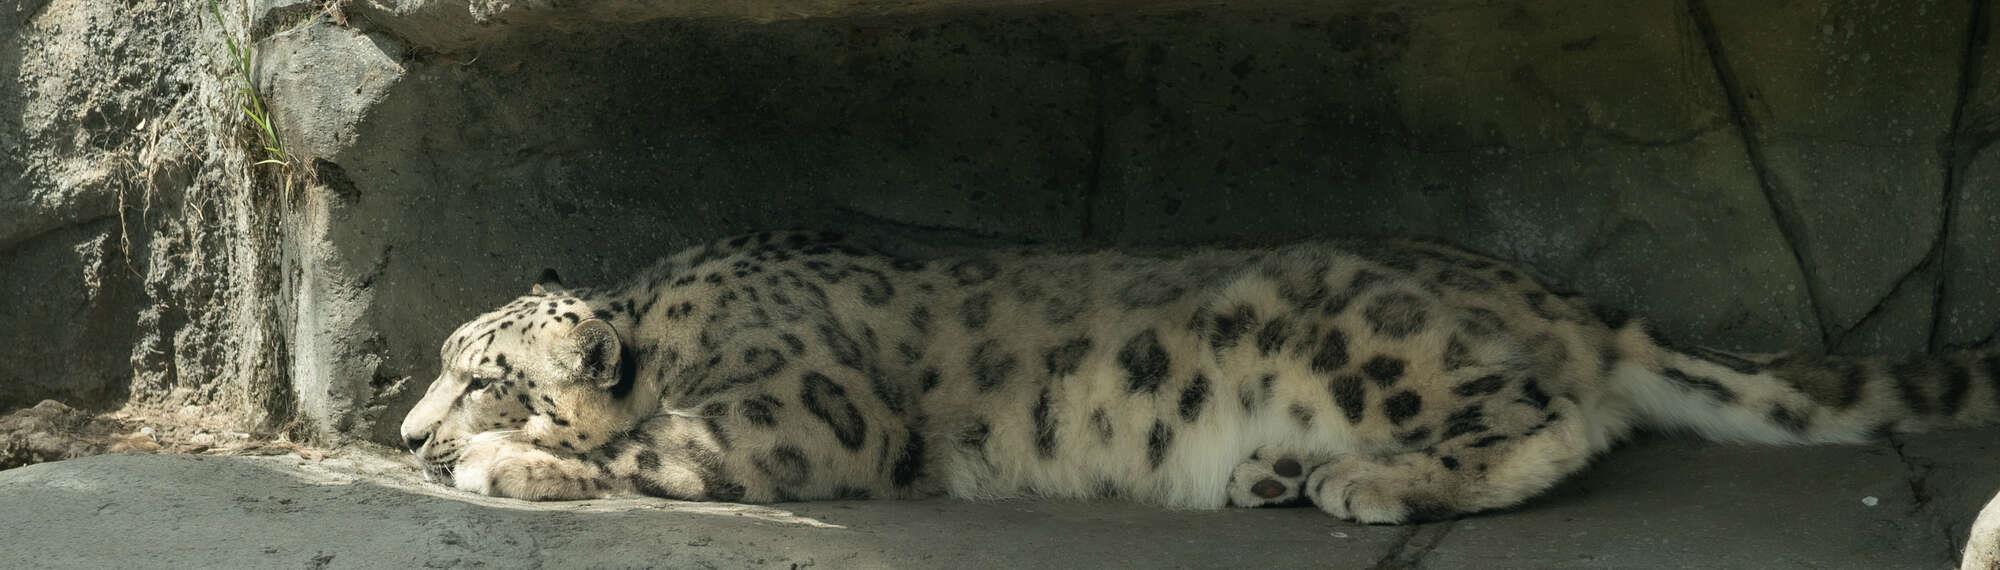 Snow Leopard Miska, resting in a rocky enclave, facing left of frame.